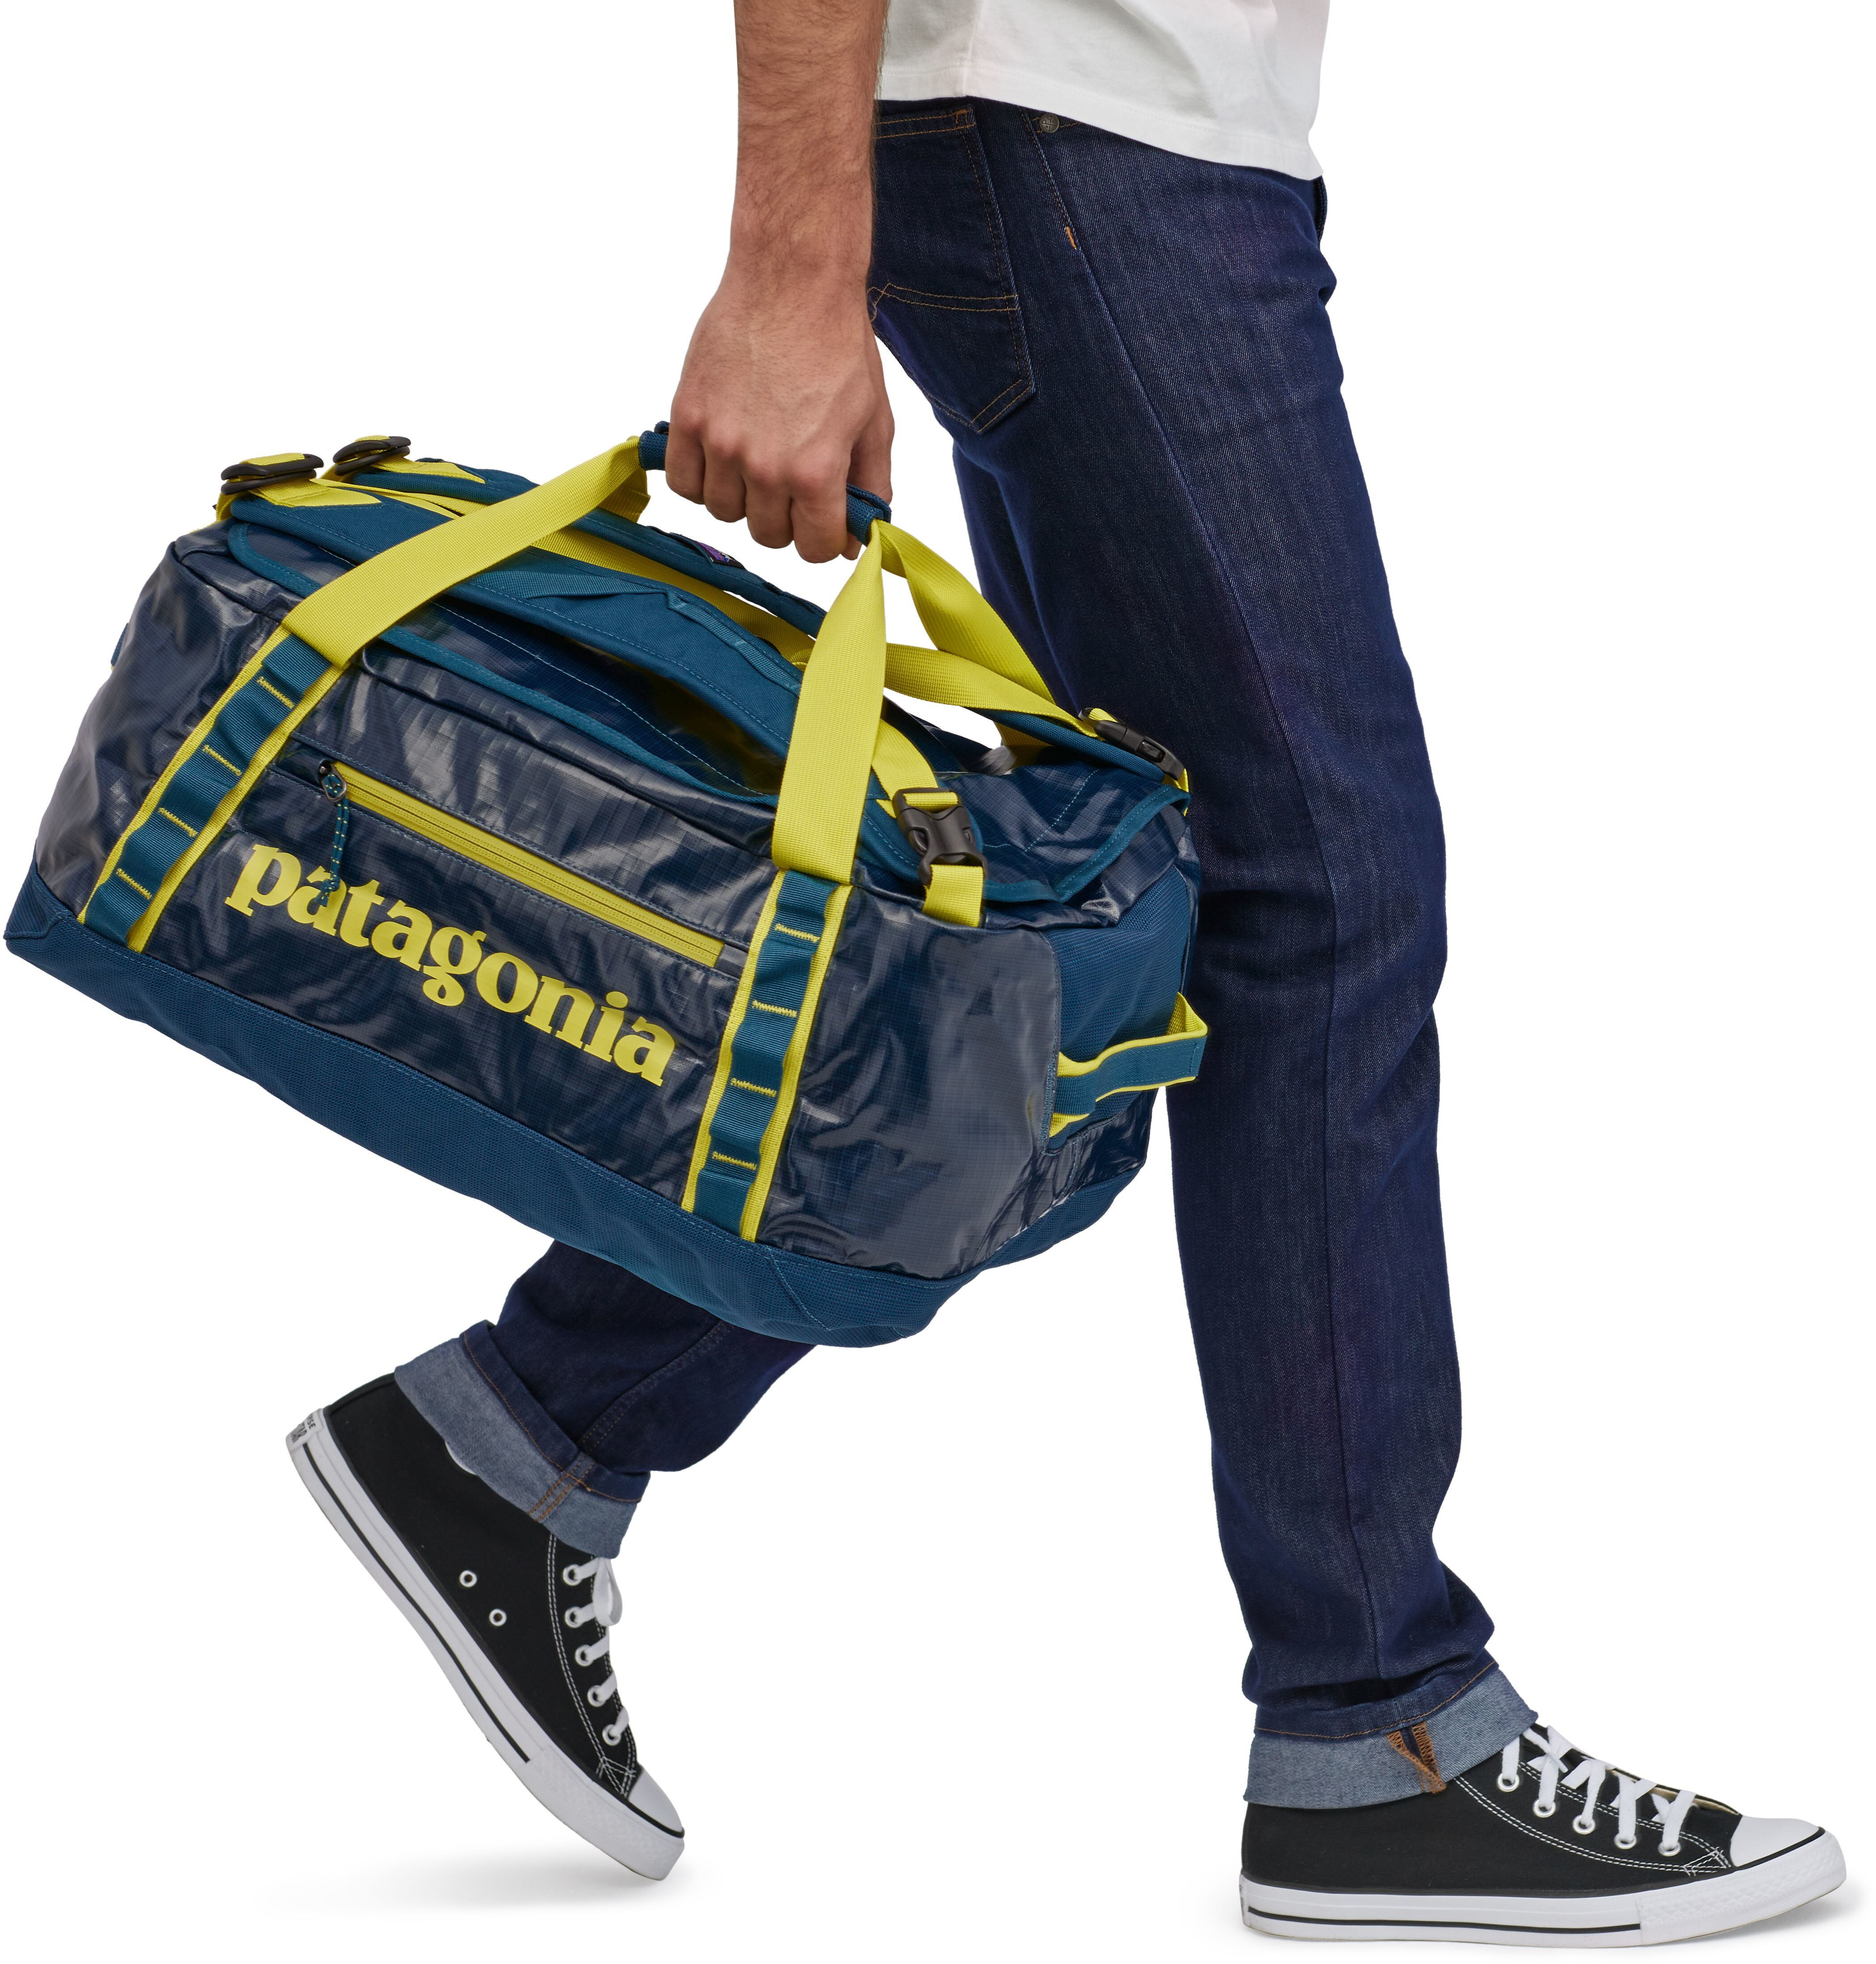 patagonia travel duffel backpack